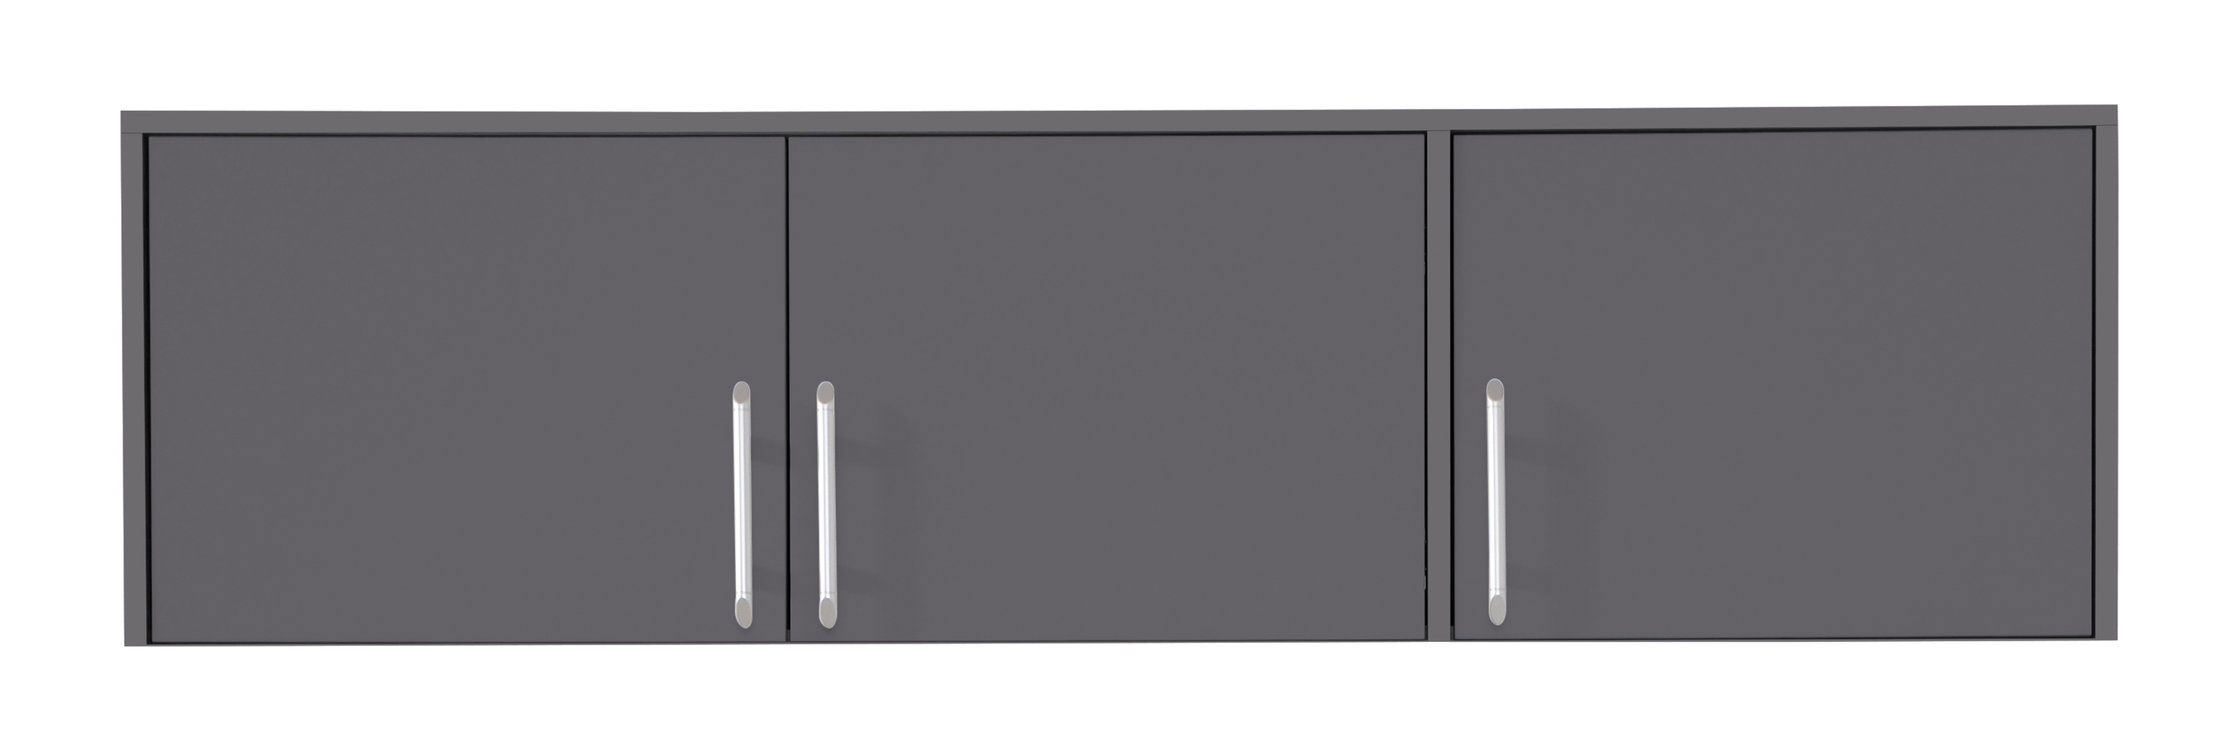 Estensione armadio Hannut 44, colore: antracite - Dimensioni: 40 x 150 x 56 cm (A x L x P)